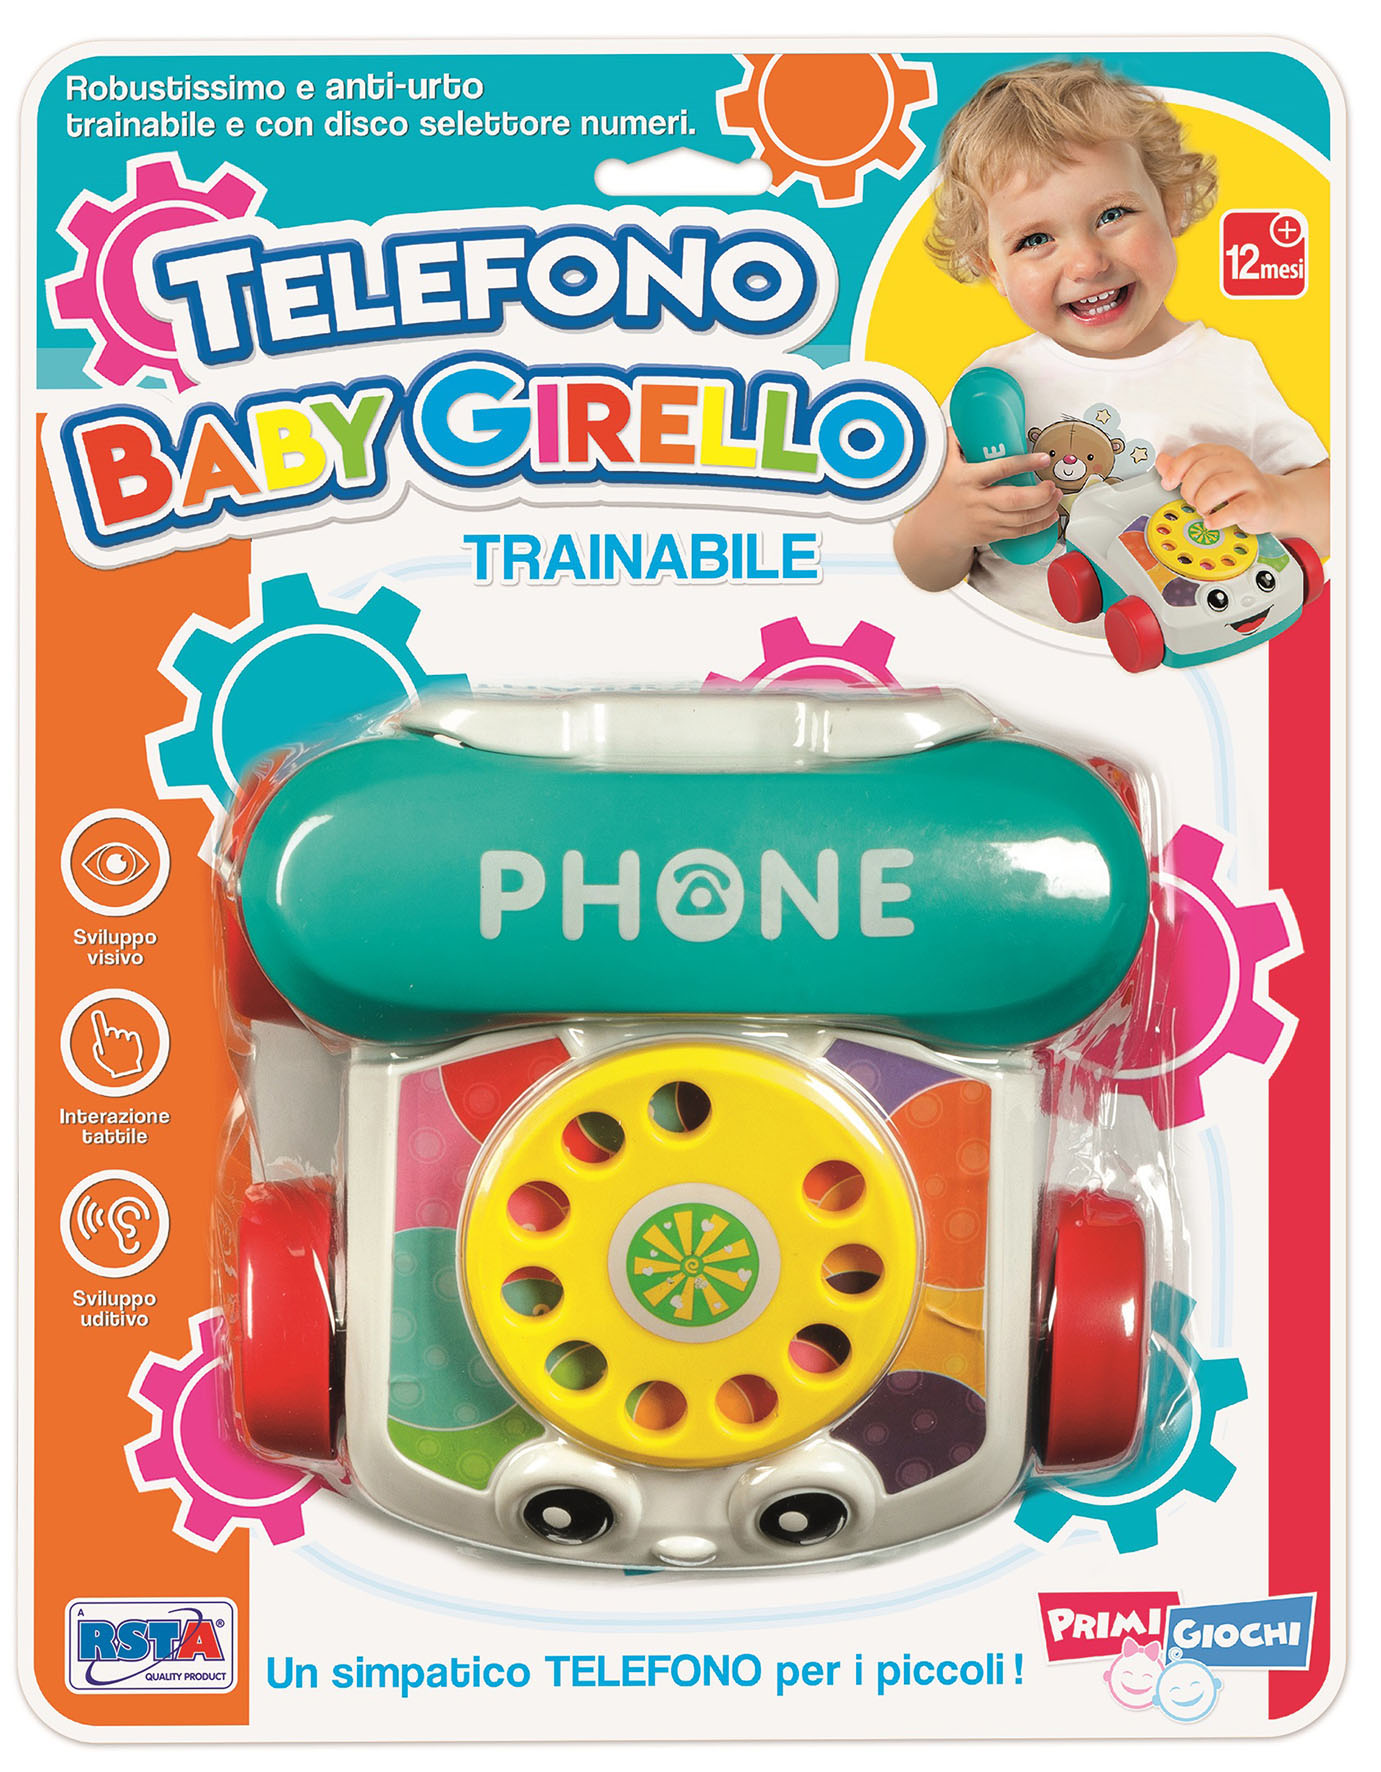 TELEFONO BABY GIRELLO